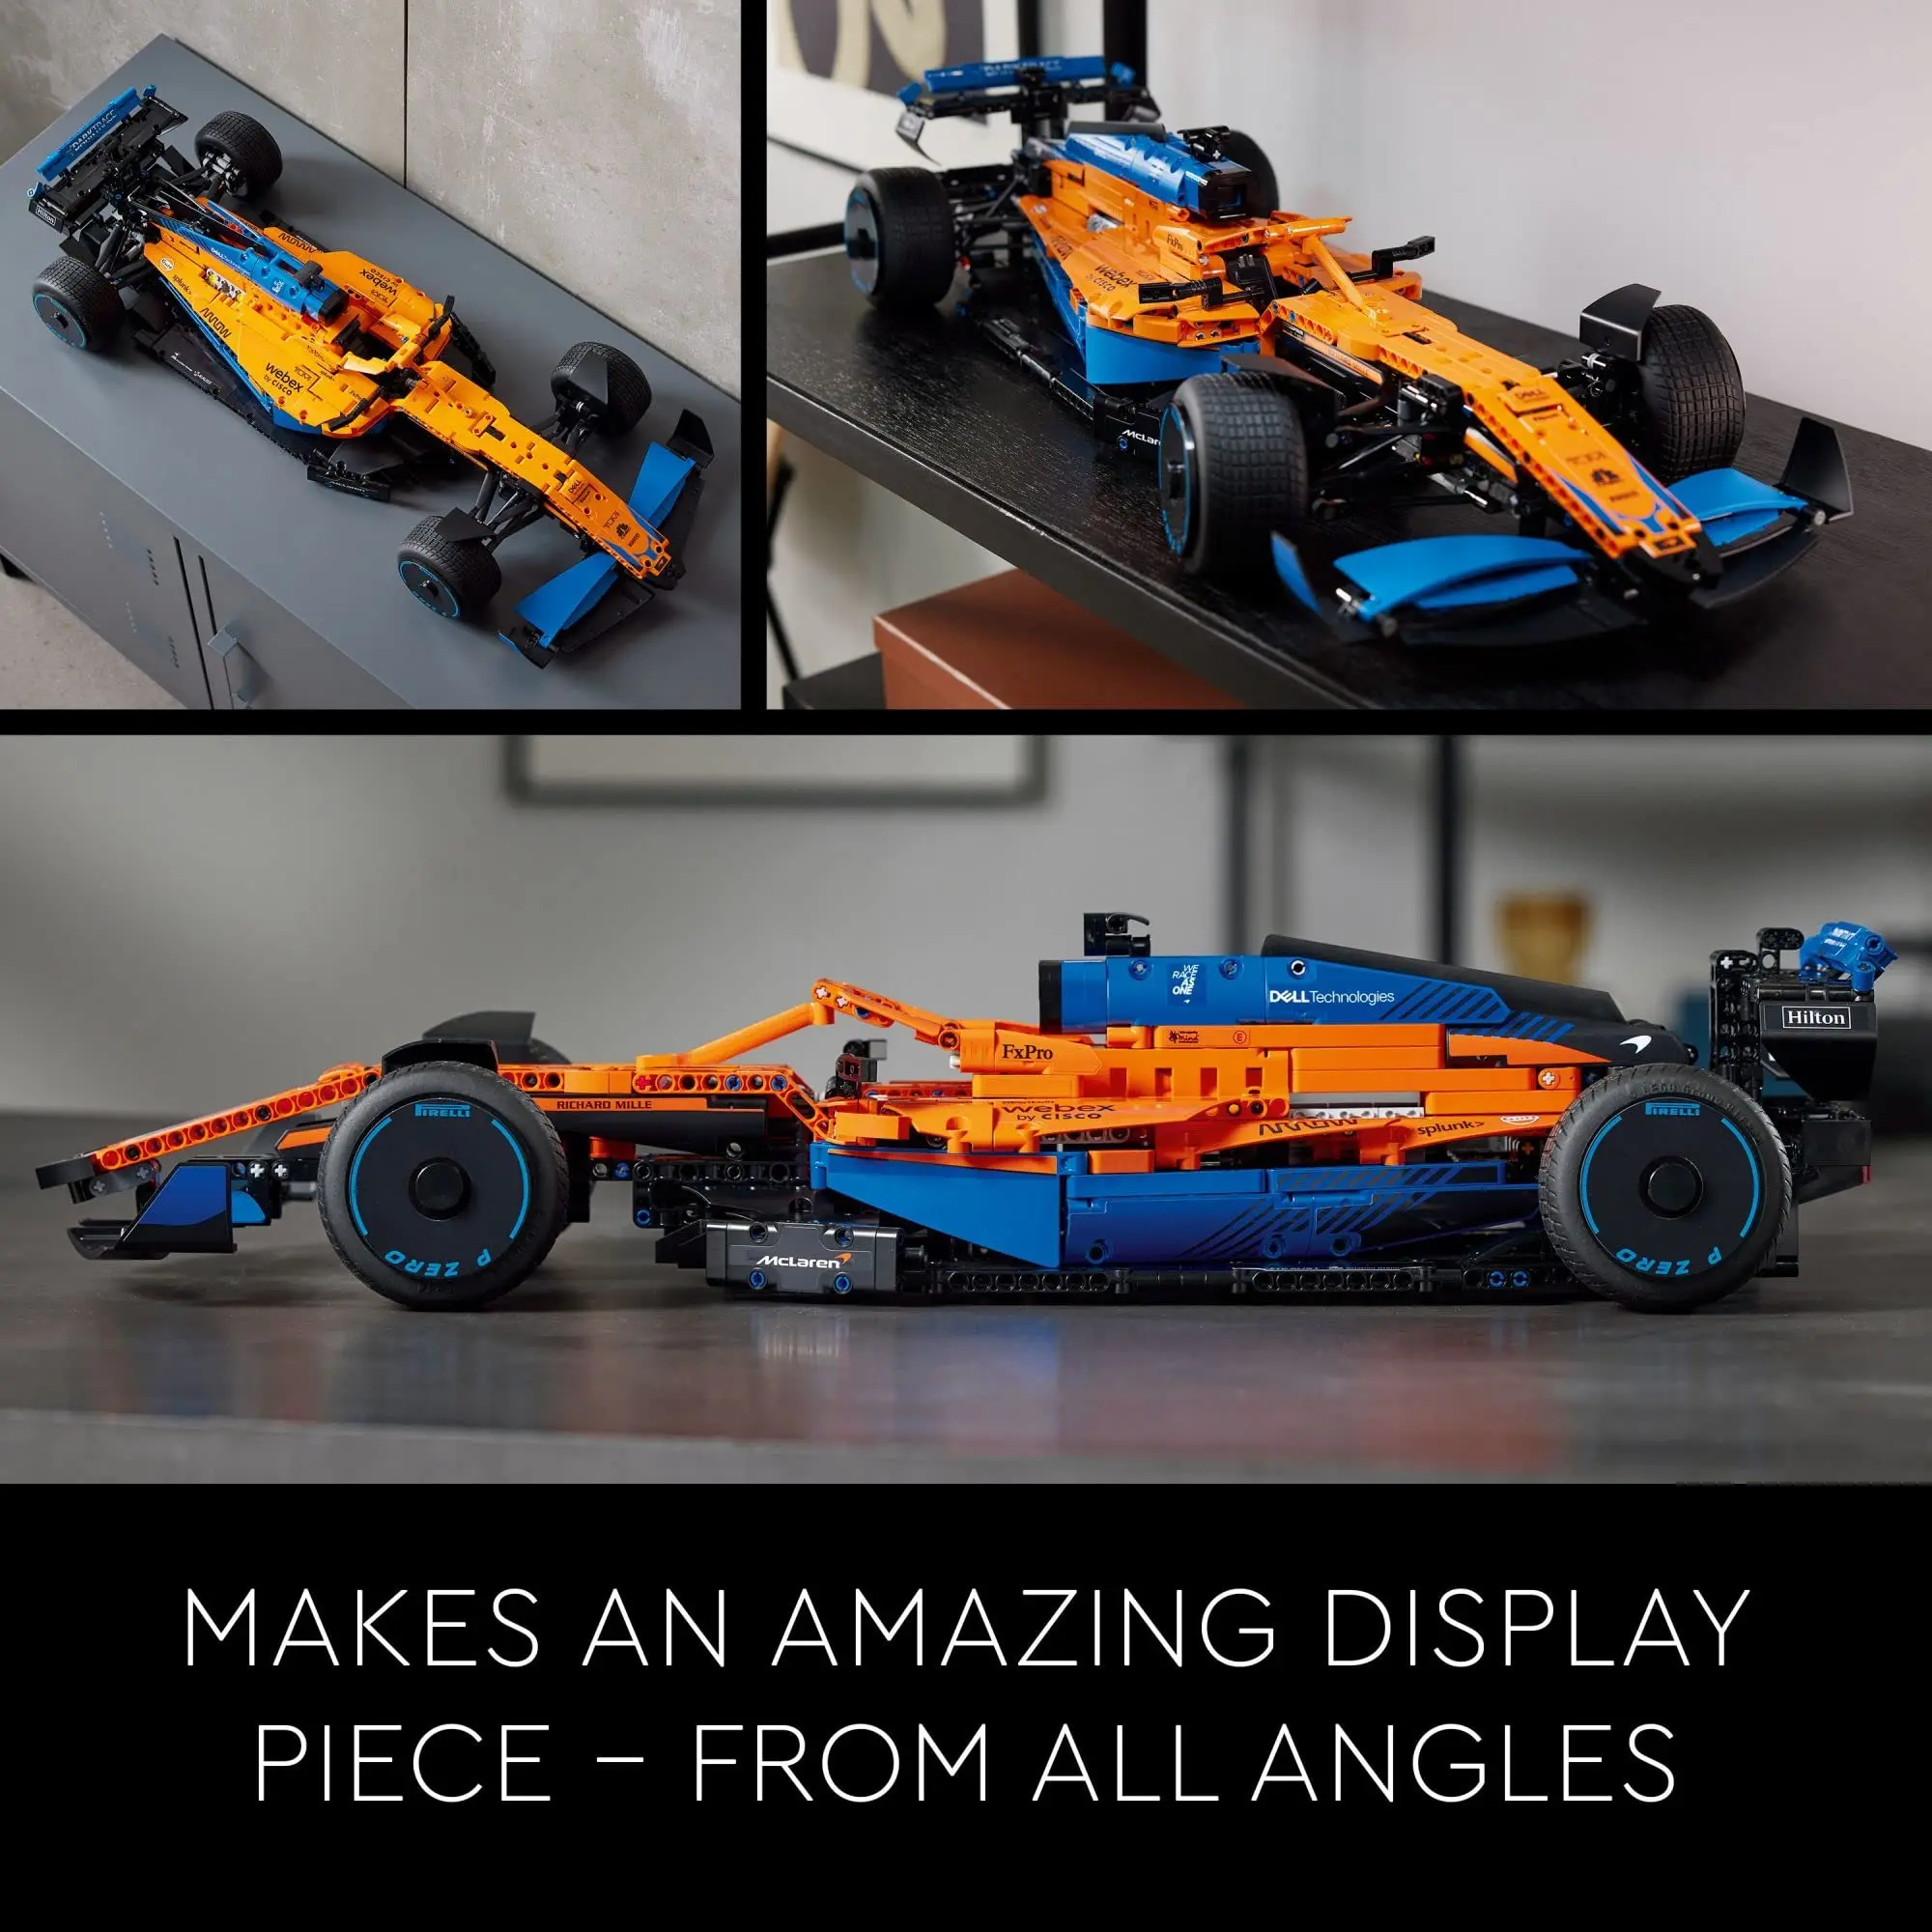 LEGO® 42141 Technic La Voiture De Course McLaren Formula 1 2022